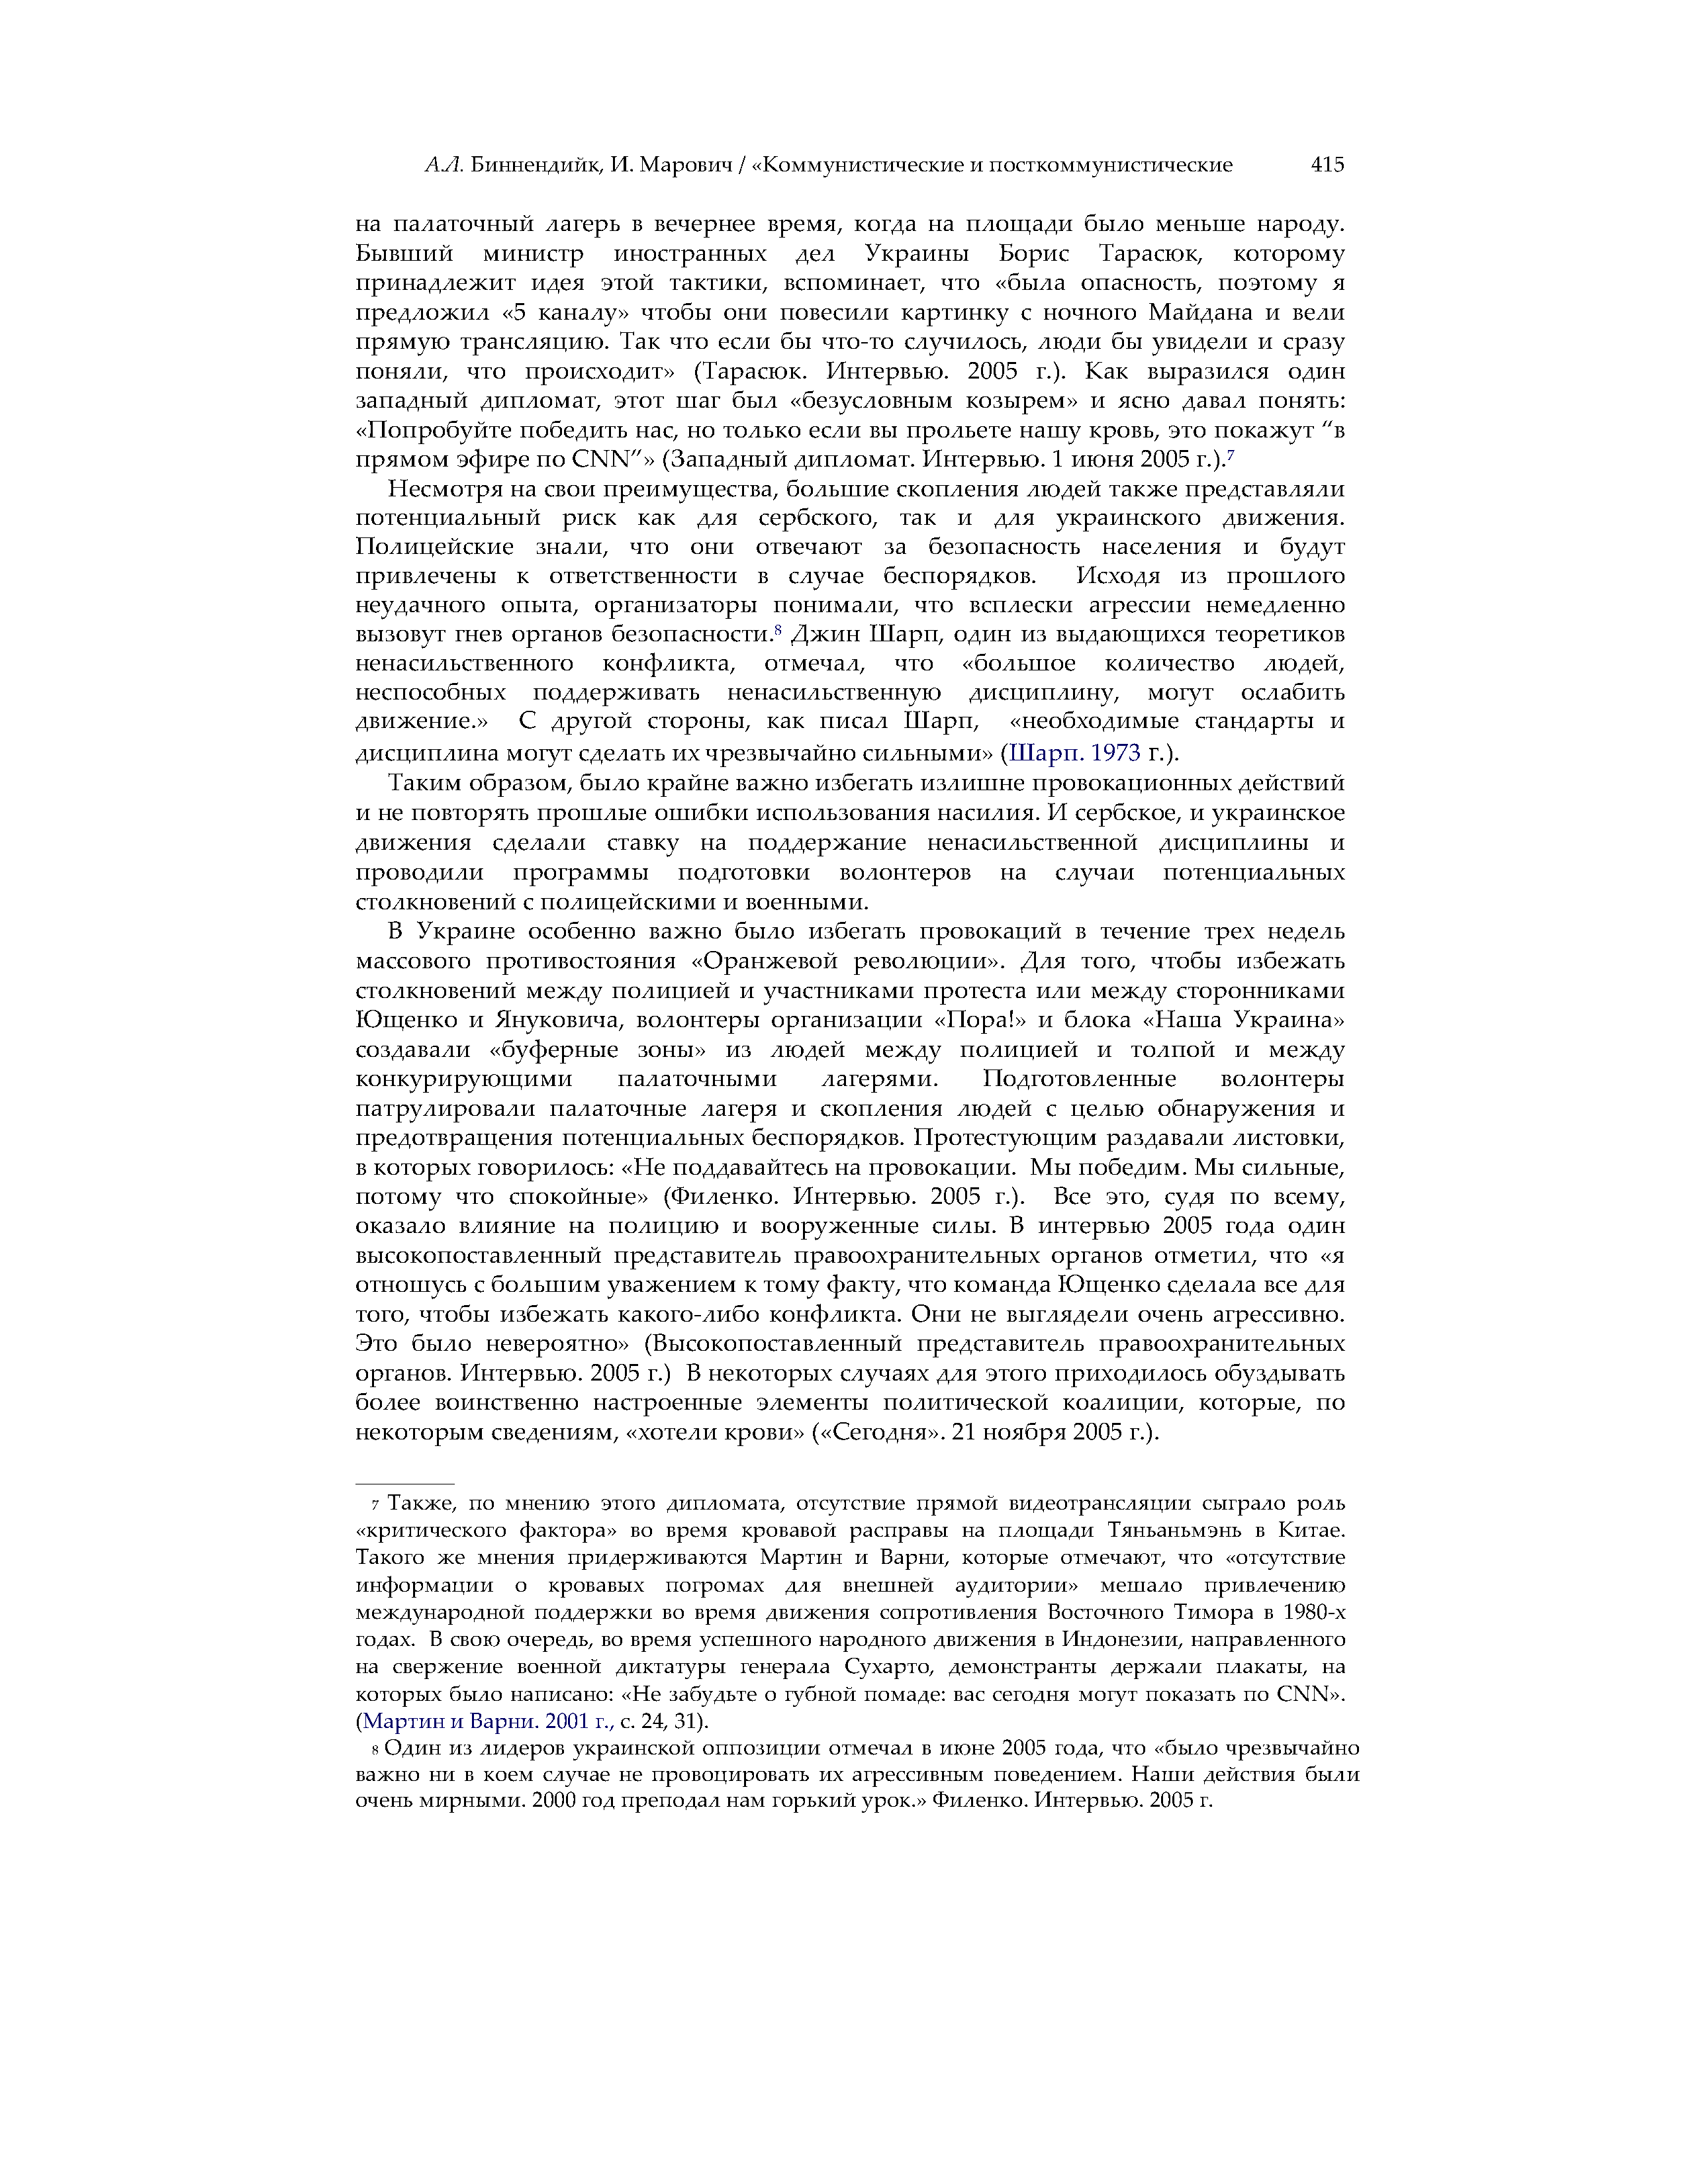 Сила и убеждение: Ненасильственные стратегии влияния на государственные службы безопасности в Сербии (2000) и Украине (2004)